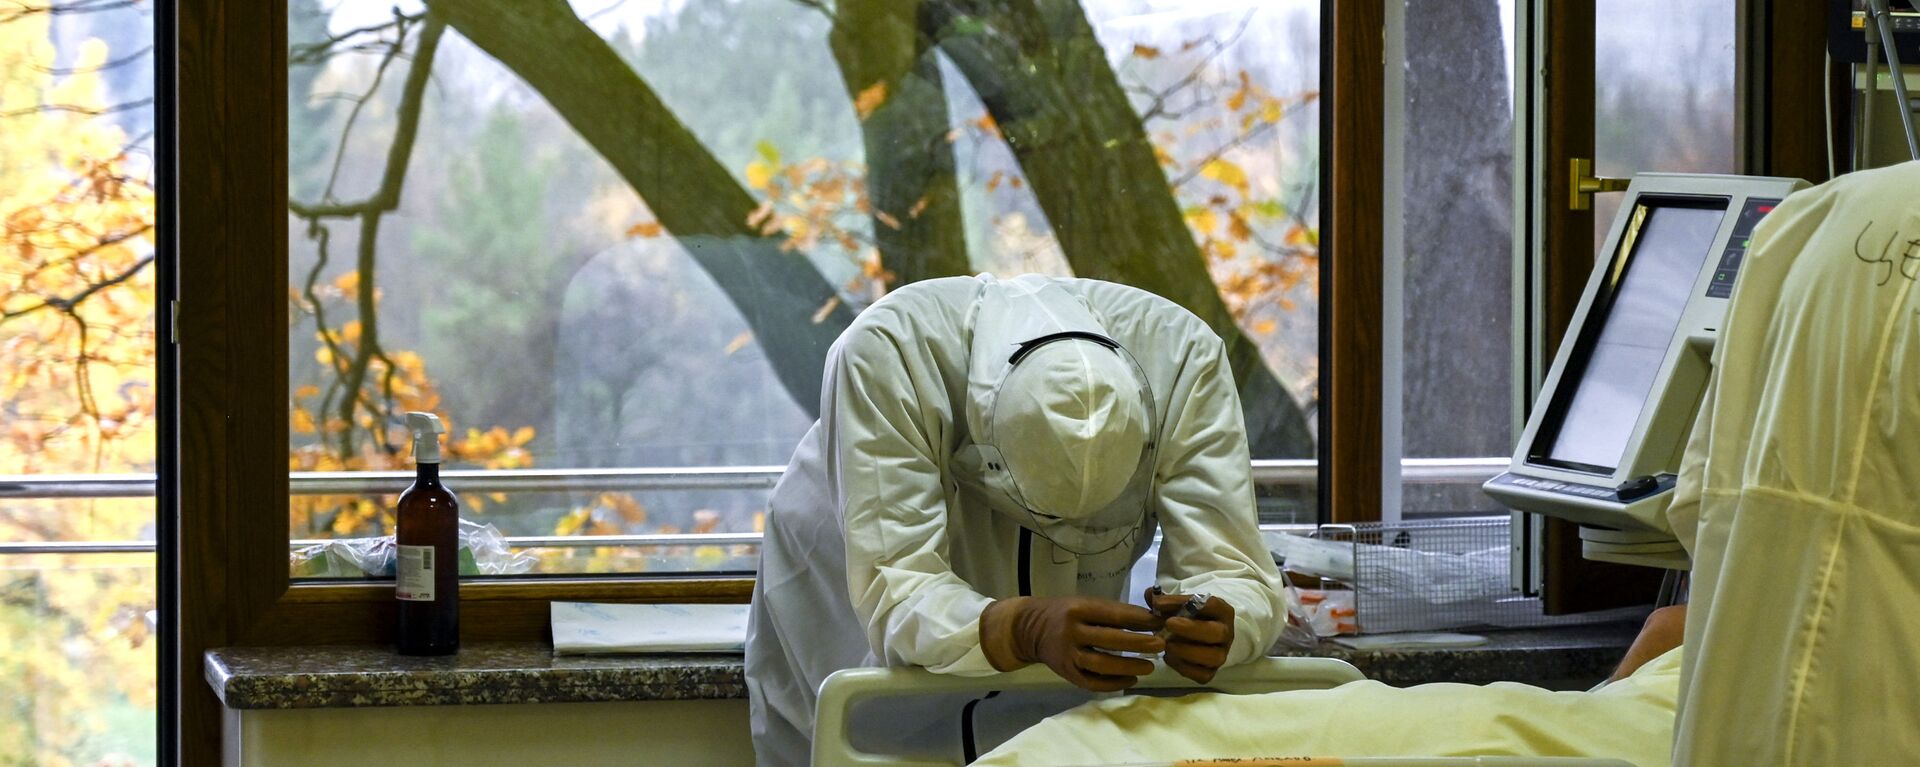 أحد أعضاء الطاقم الطبي يستريح بجانب مريض مصاب بفيروس كوفيد-19 في وحدة العناية المركزة في مستشفى لوزينيتس في صوفيا، بلغاريا 9 نوفمبر 2021. - سبوتنيك عربي, 1920, 13.07.2022